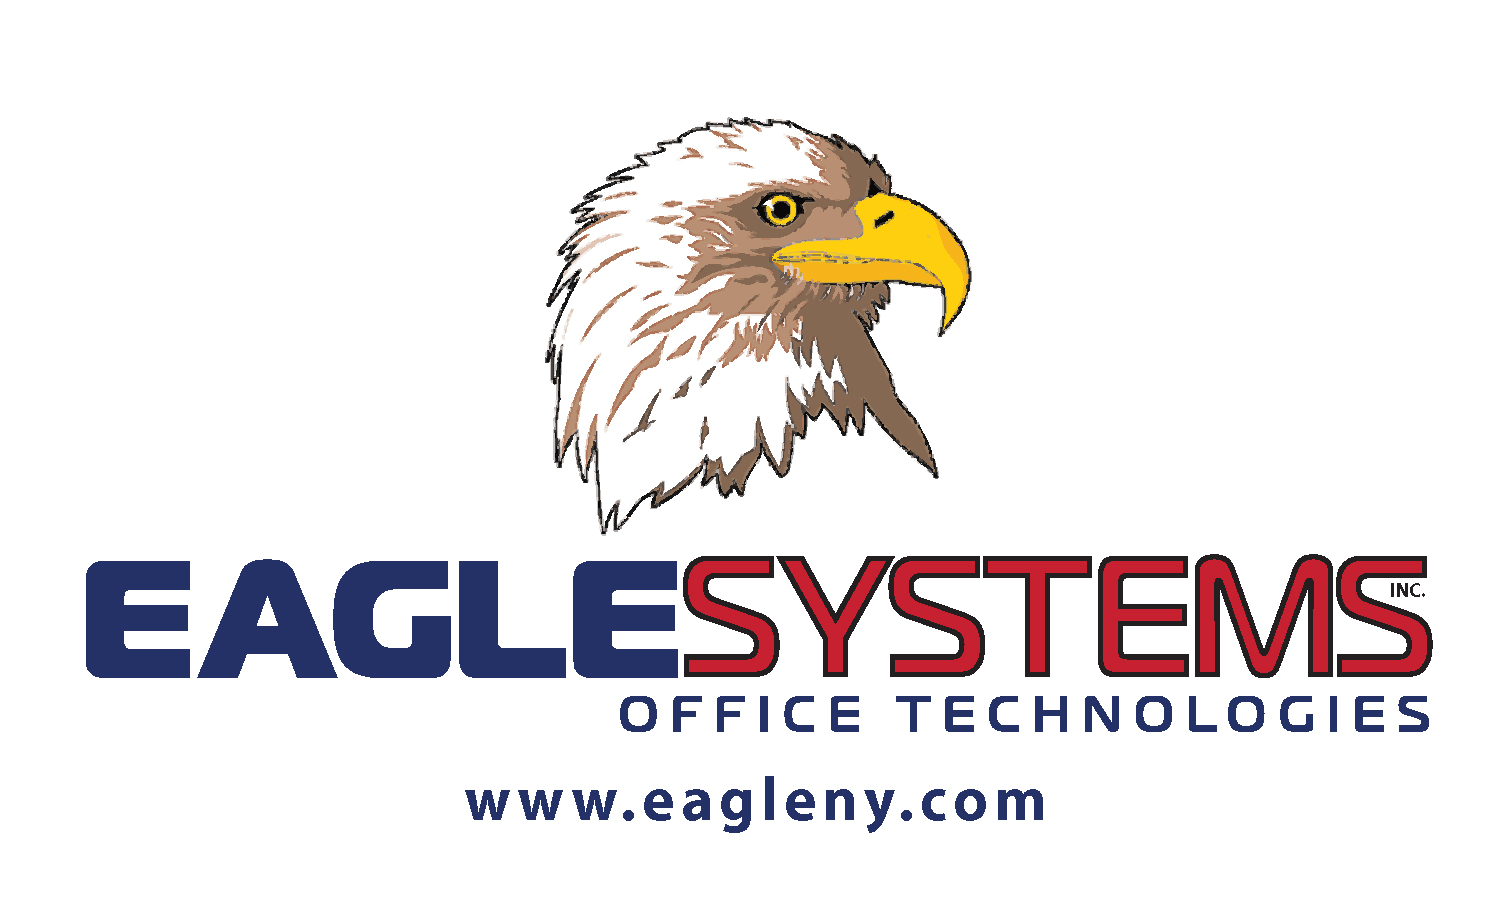 Eagle Systems Inc